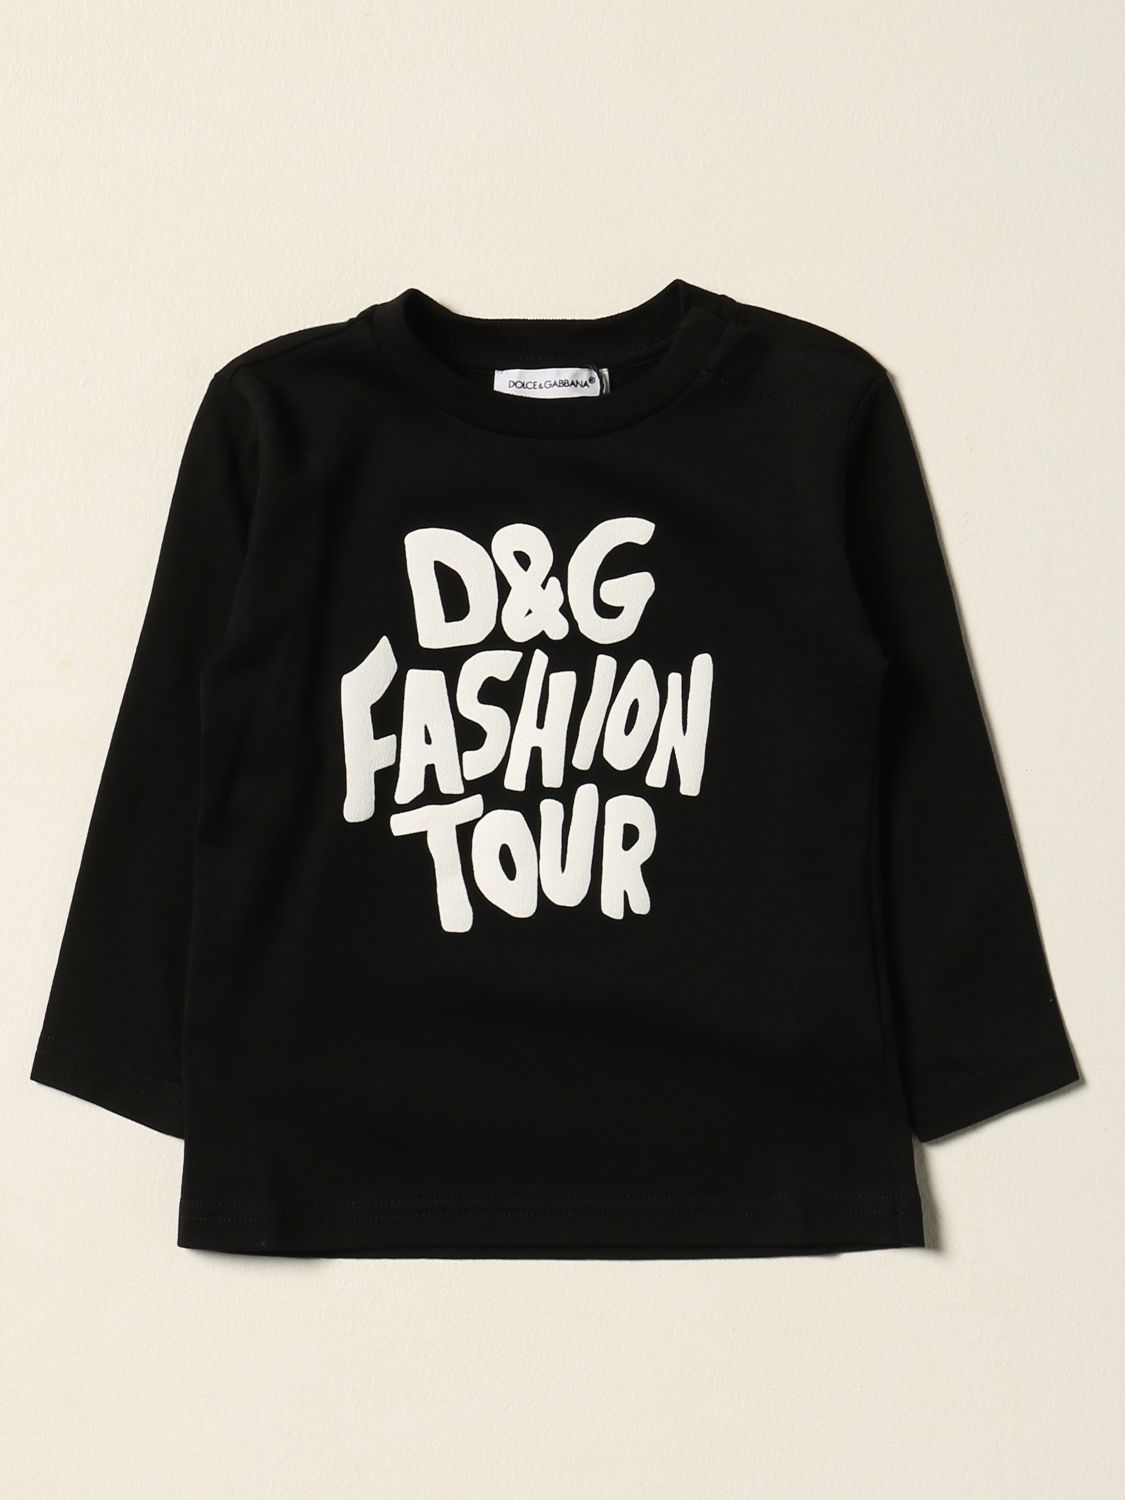 T-shirt Dolce & Gabbana: T-shirt DG fashion tour Dolce & Gabbana nero 1